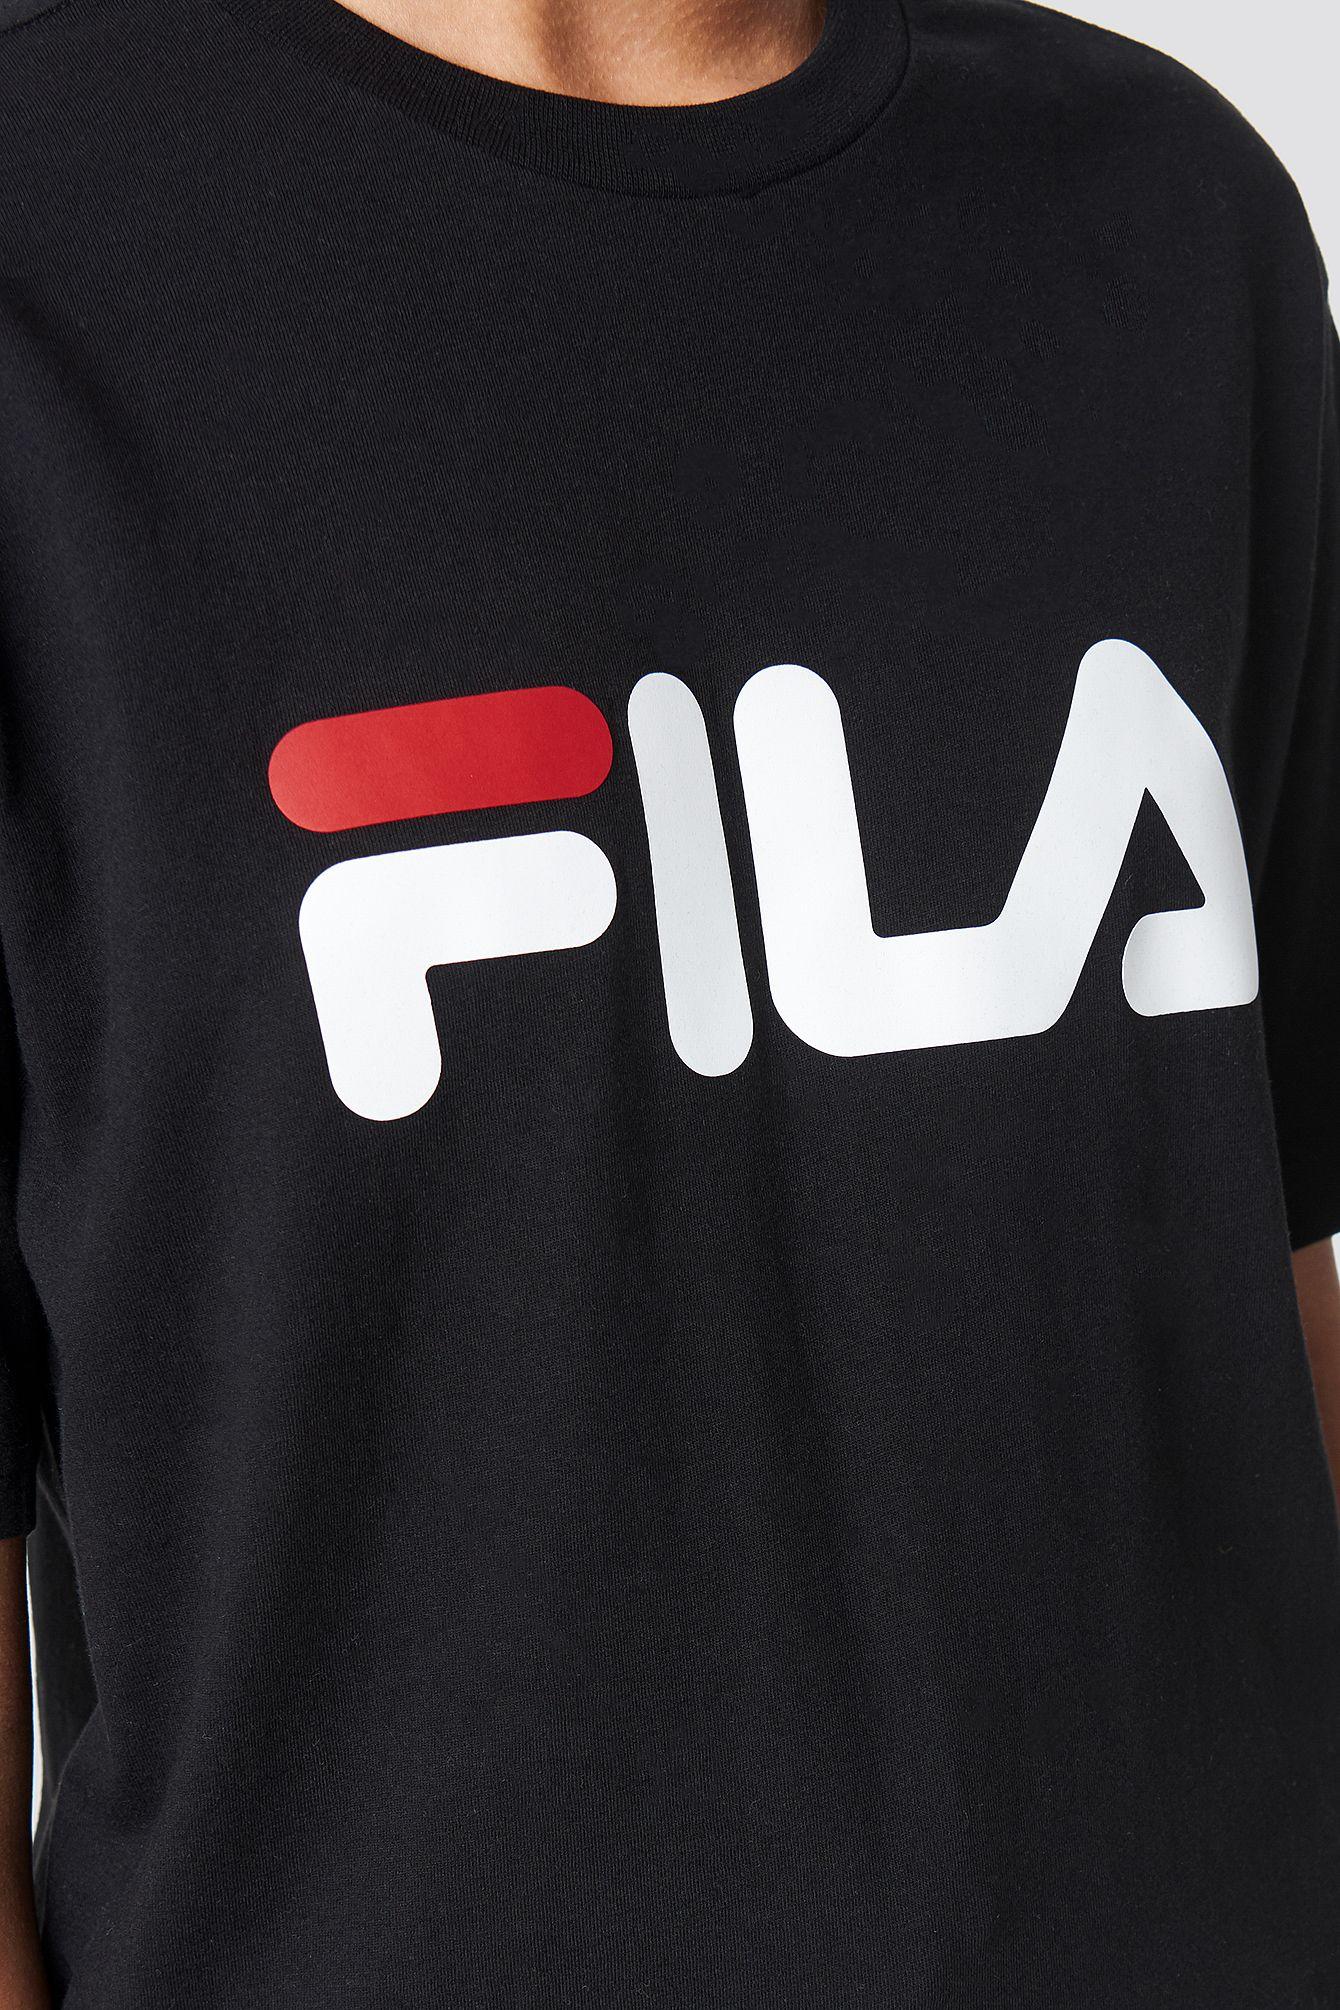 Old Fila Logo - FILA. Shop FILA Shoes, Sweaters & Tees. Na Kd.com